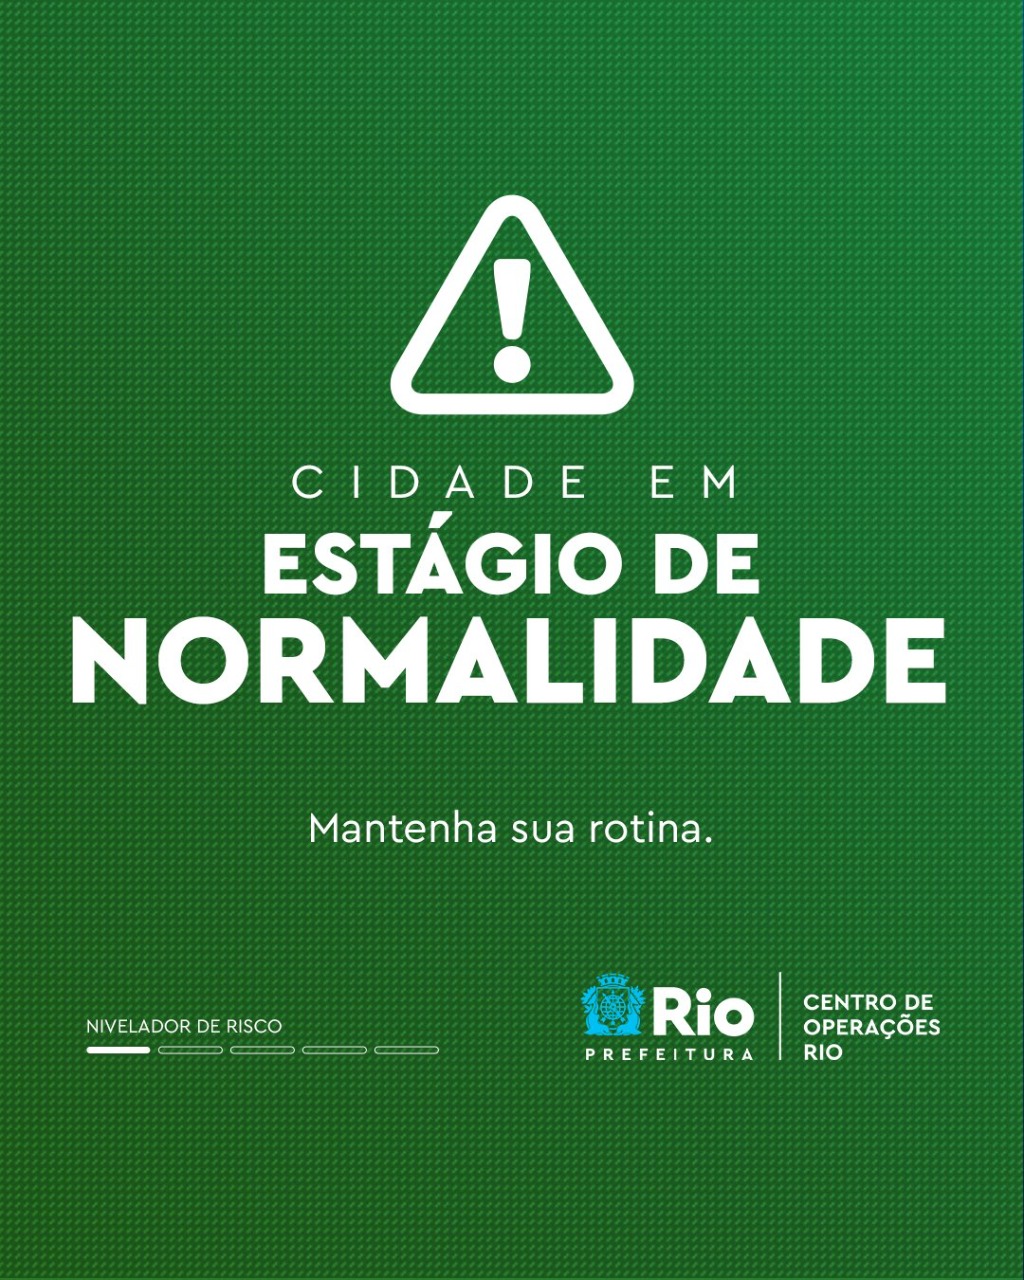 Imagem do Banner do Centro de Operações da Prefeitura do Rio